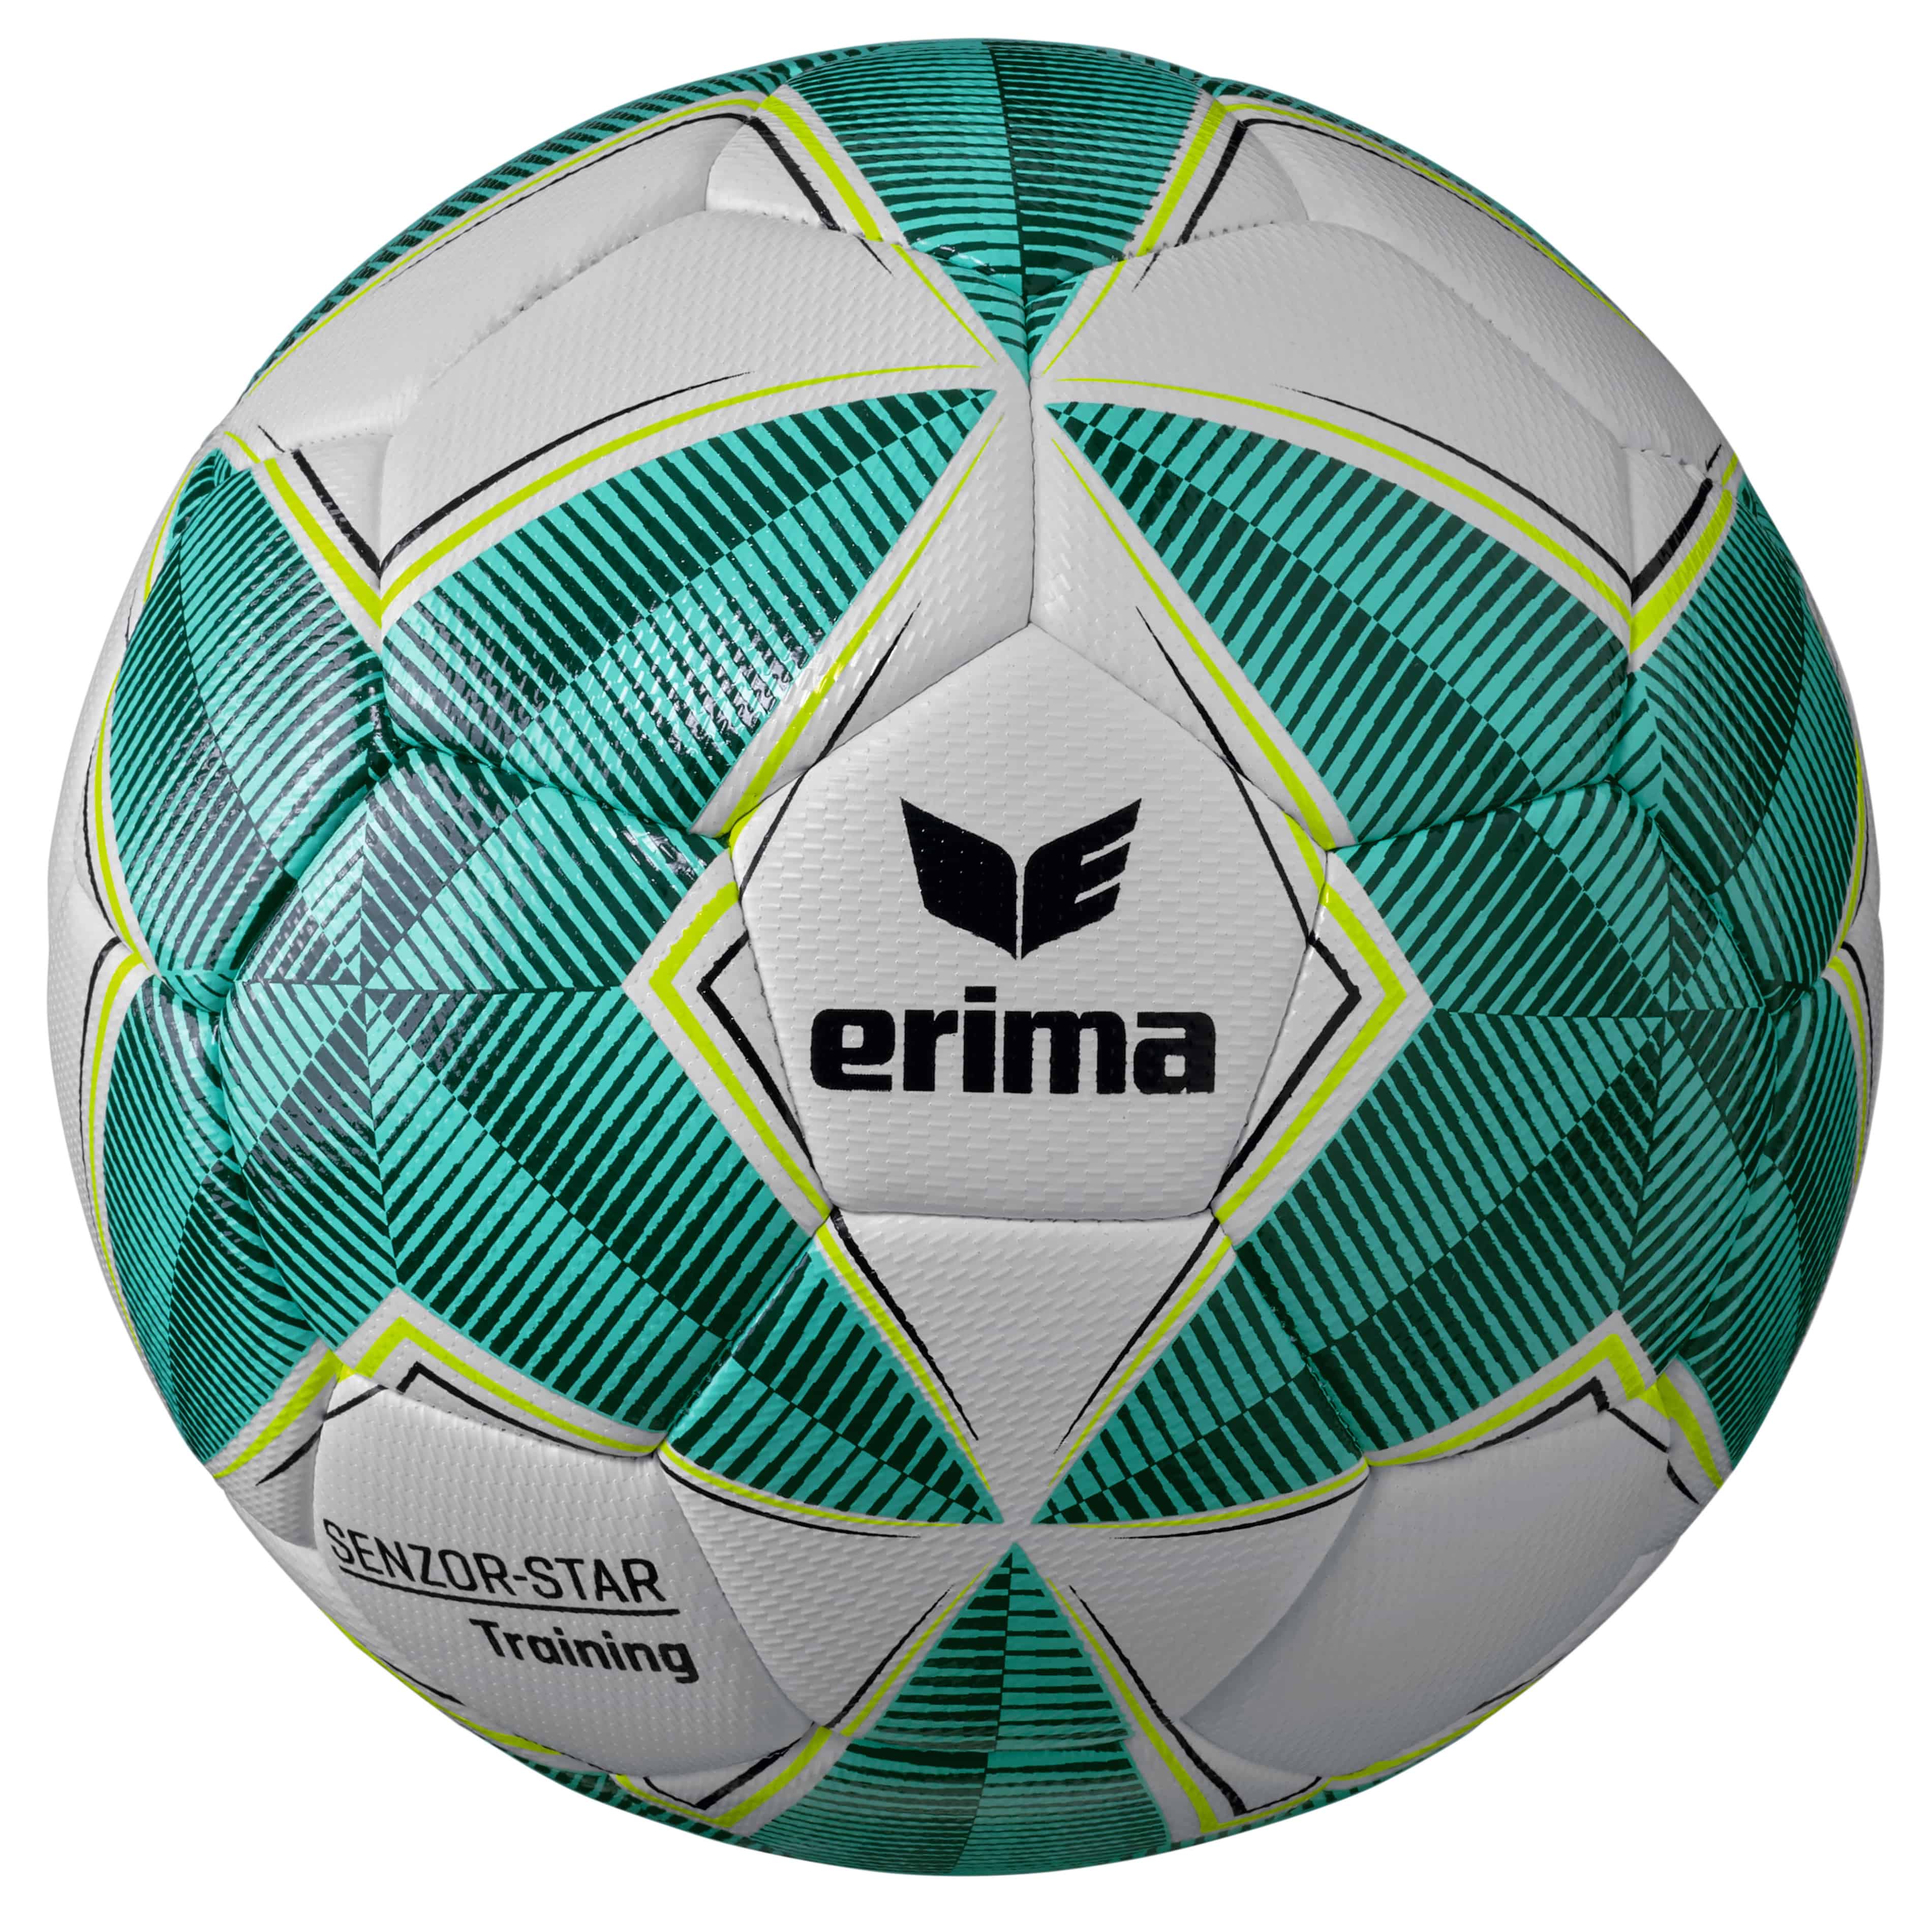 Erima Fußball Senzor-Star Training Gr.3 aqua-evergreen